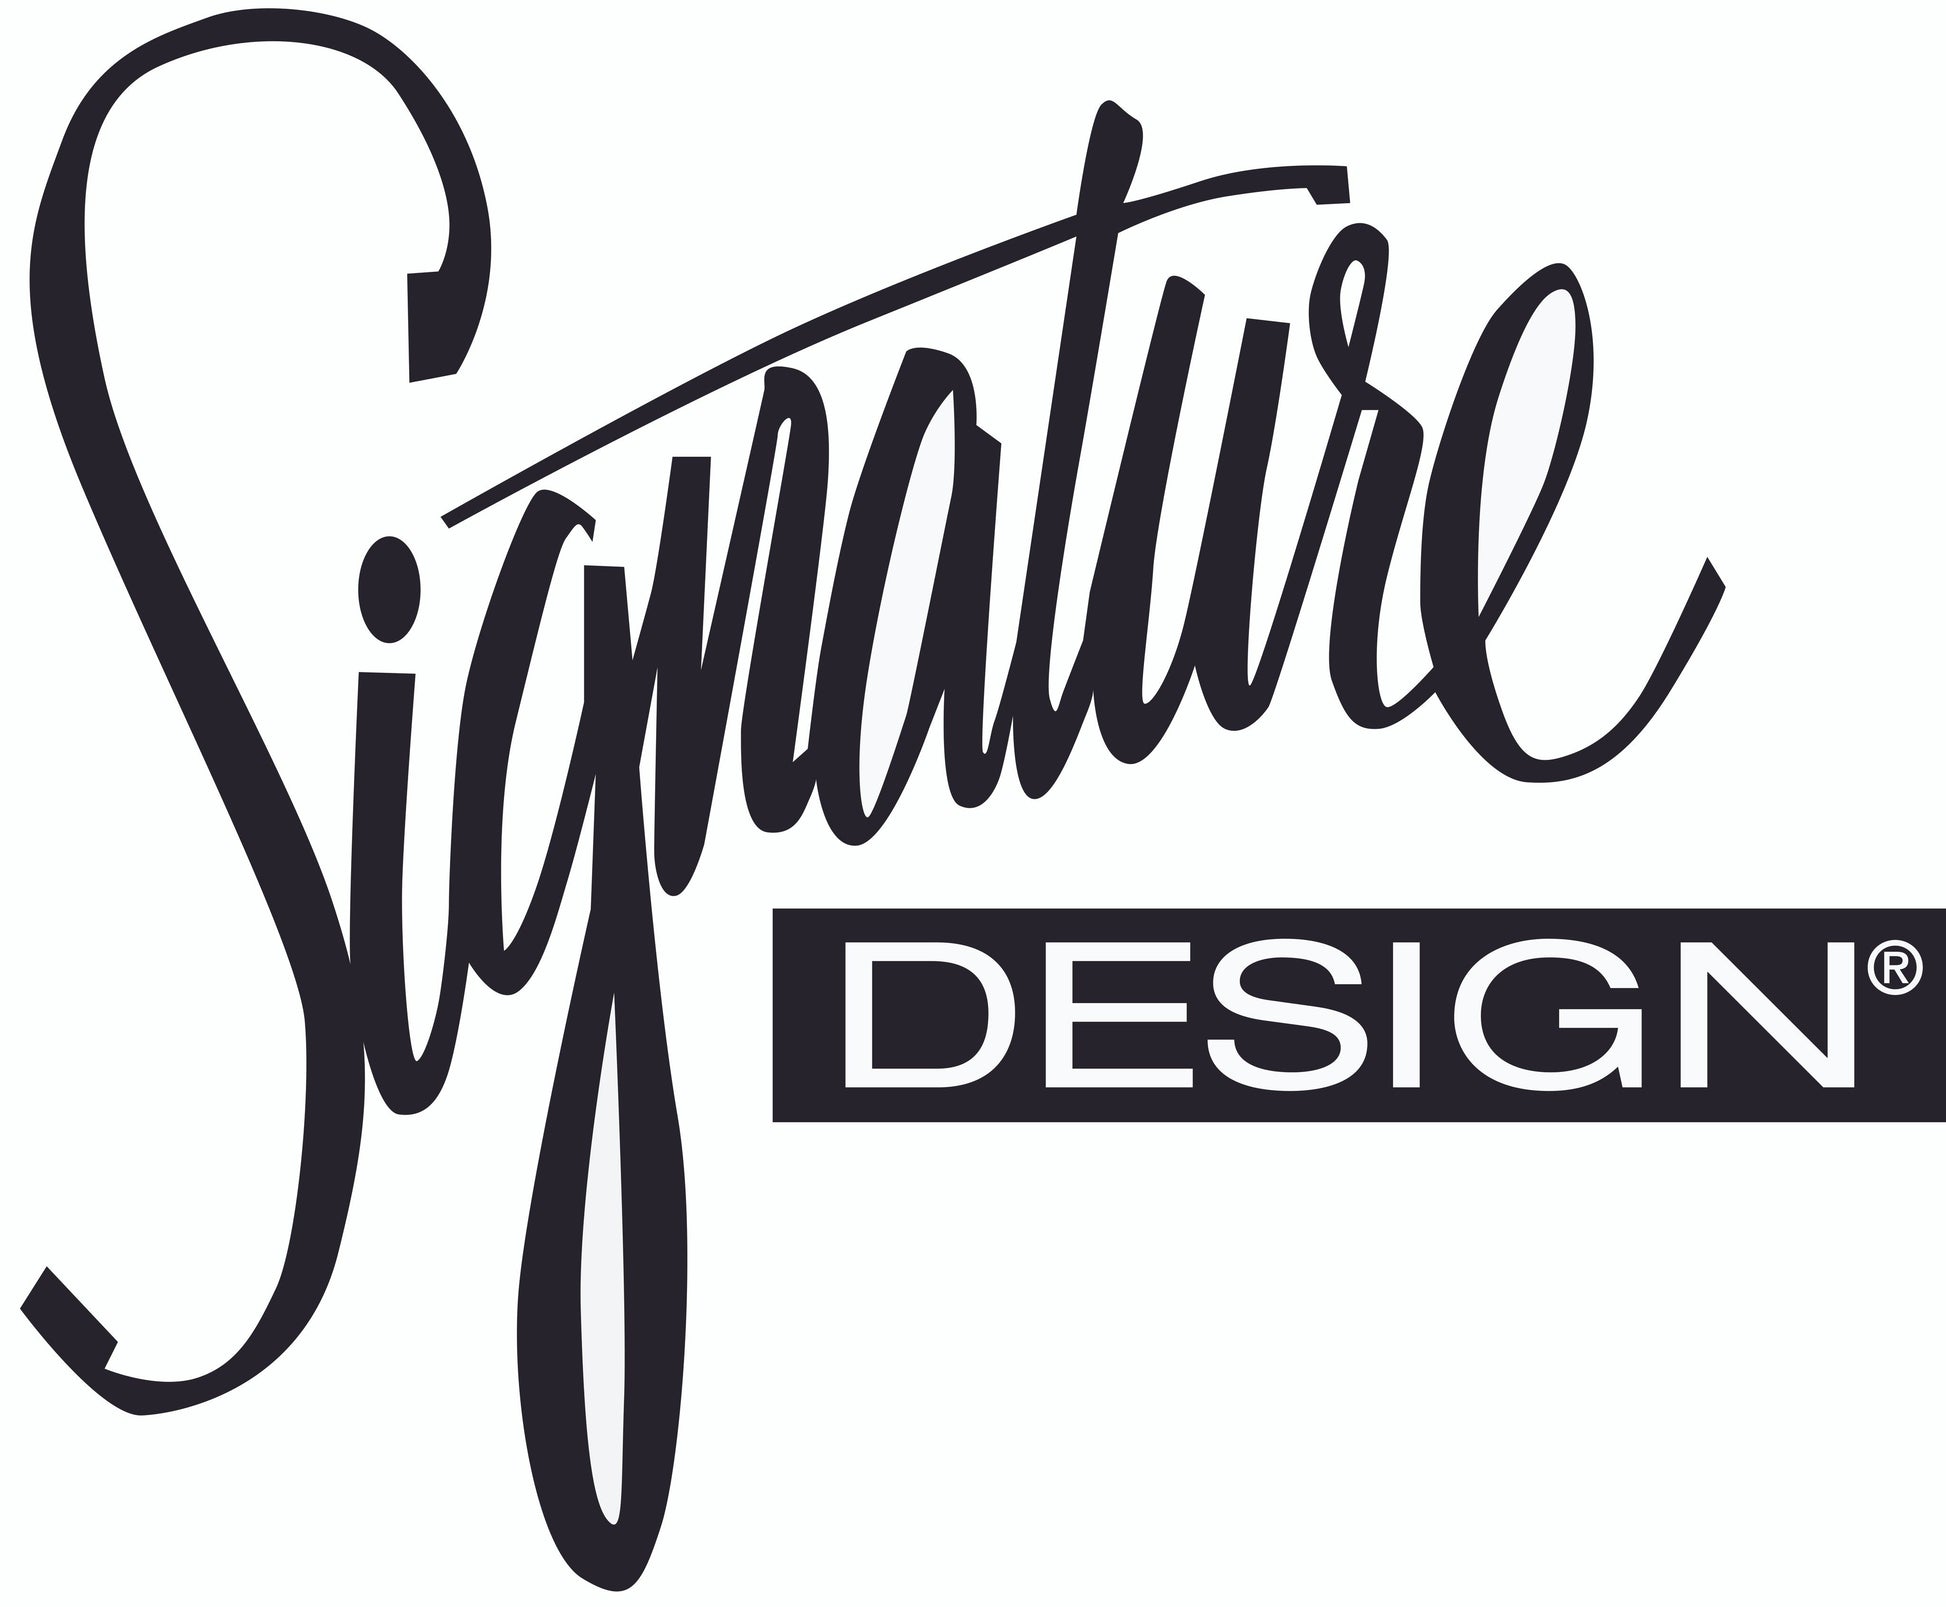 Cascilla Ottoman Signature Design by Ashley®